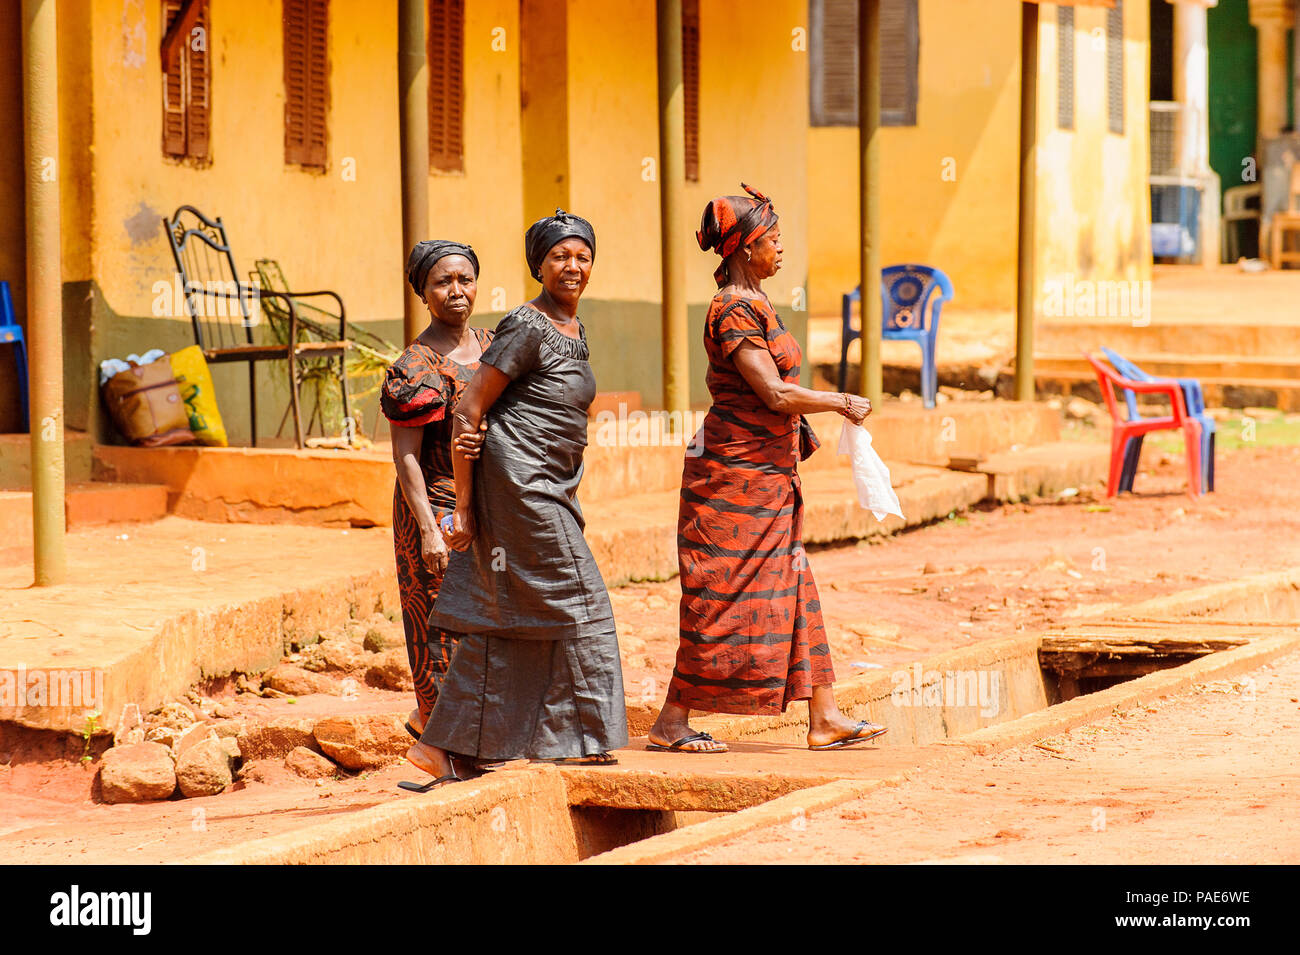 ACCRA, Ghana - Marzo 5, 2012: La mujer ghanesa no identificado a pie en la calle en Ghana. El pueblo de Ghana sufren de pobreza debido a la inestabilidad económica Foto de stock